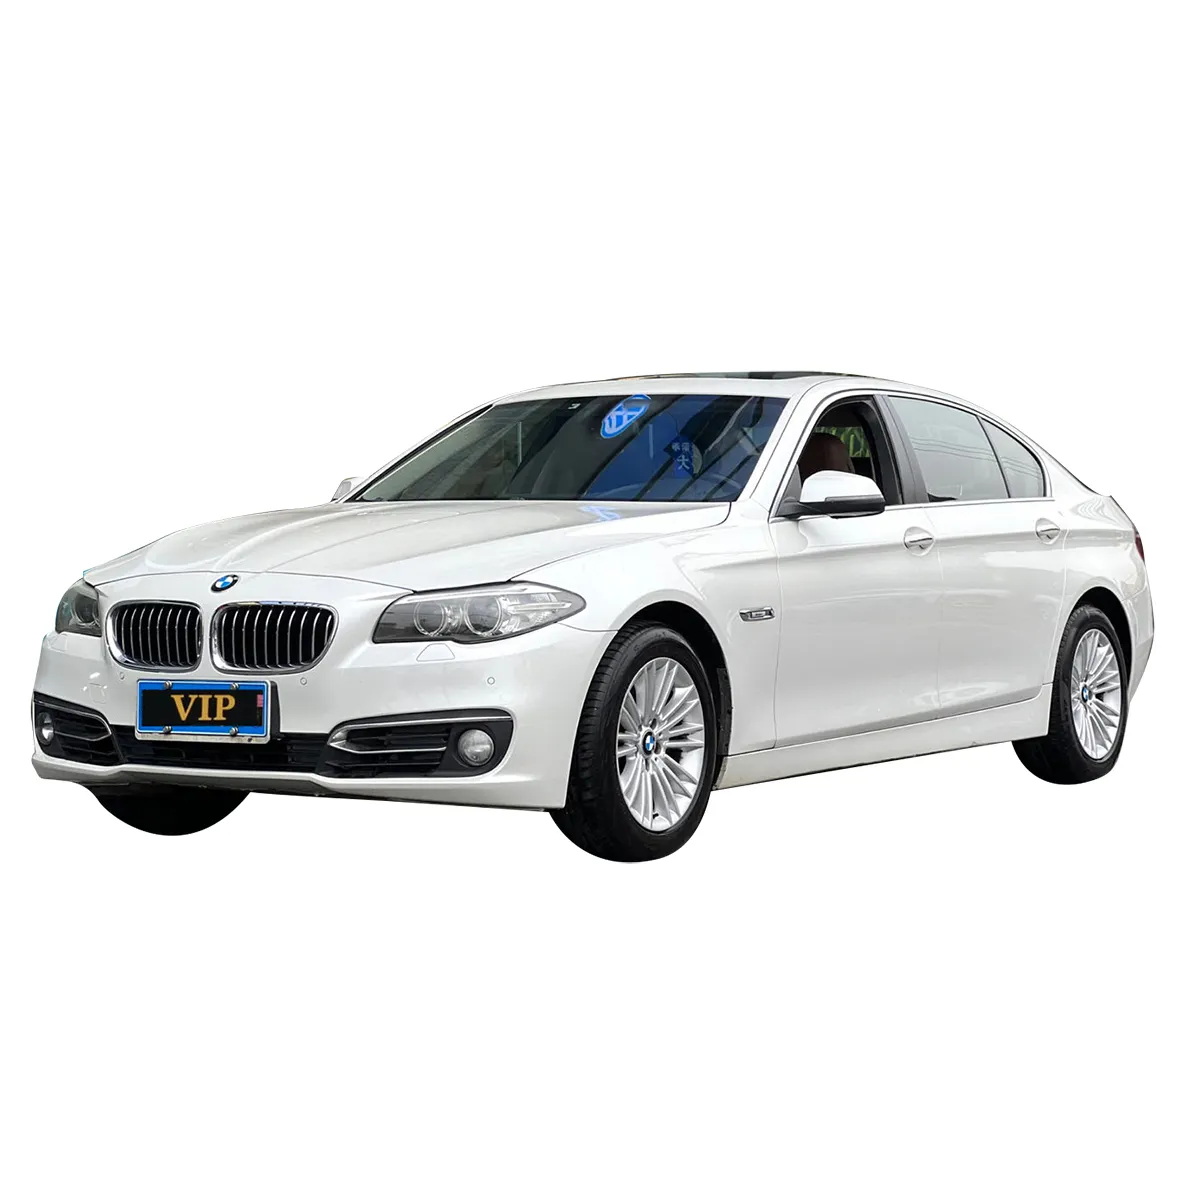 Лучшая цена 2014 BMW 5-class 525Li подержанные автомобили дешевые автомобили низкая цена для продажи